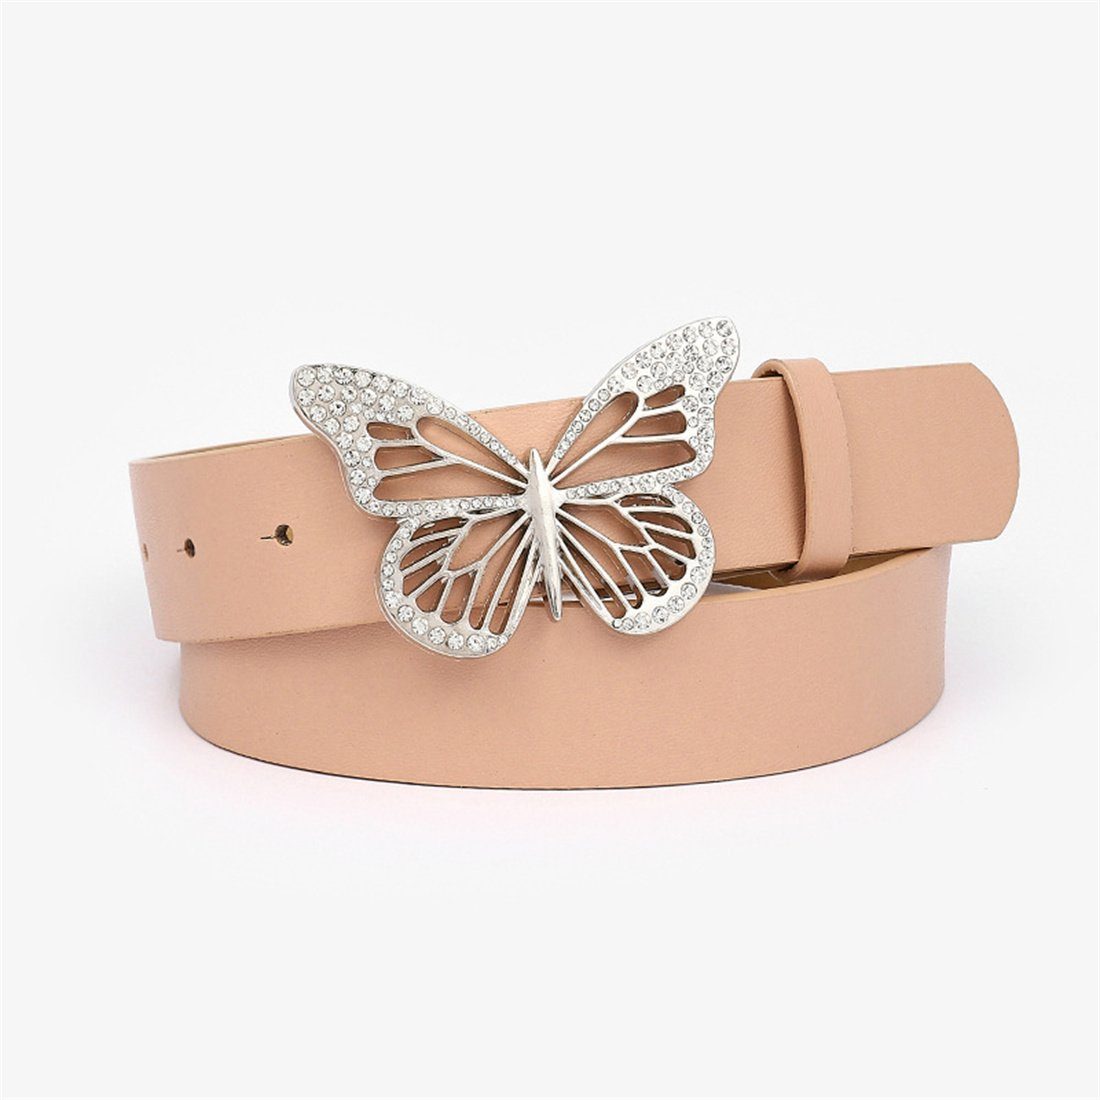 LYDMN Ledergürtel Damen Strassgürtel mit Schmetterlingsschnalle, Mode Gürtel Zubehör Rosa